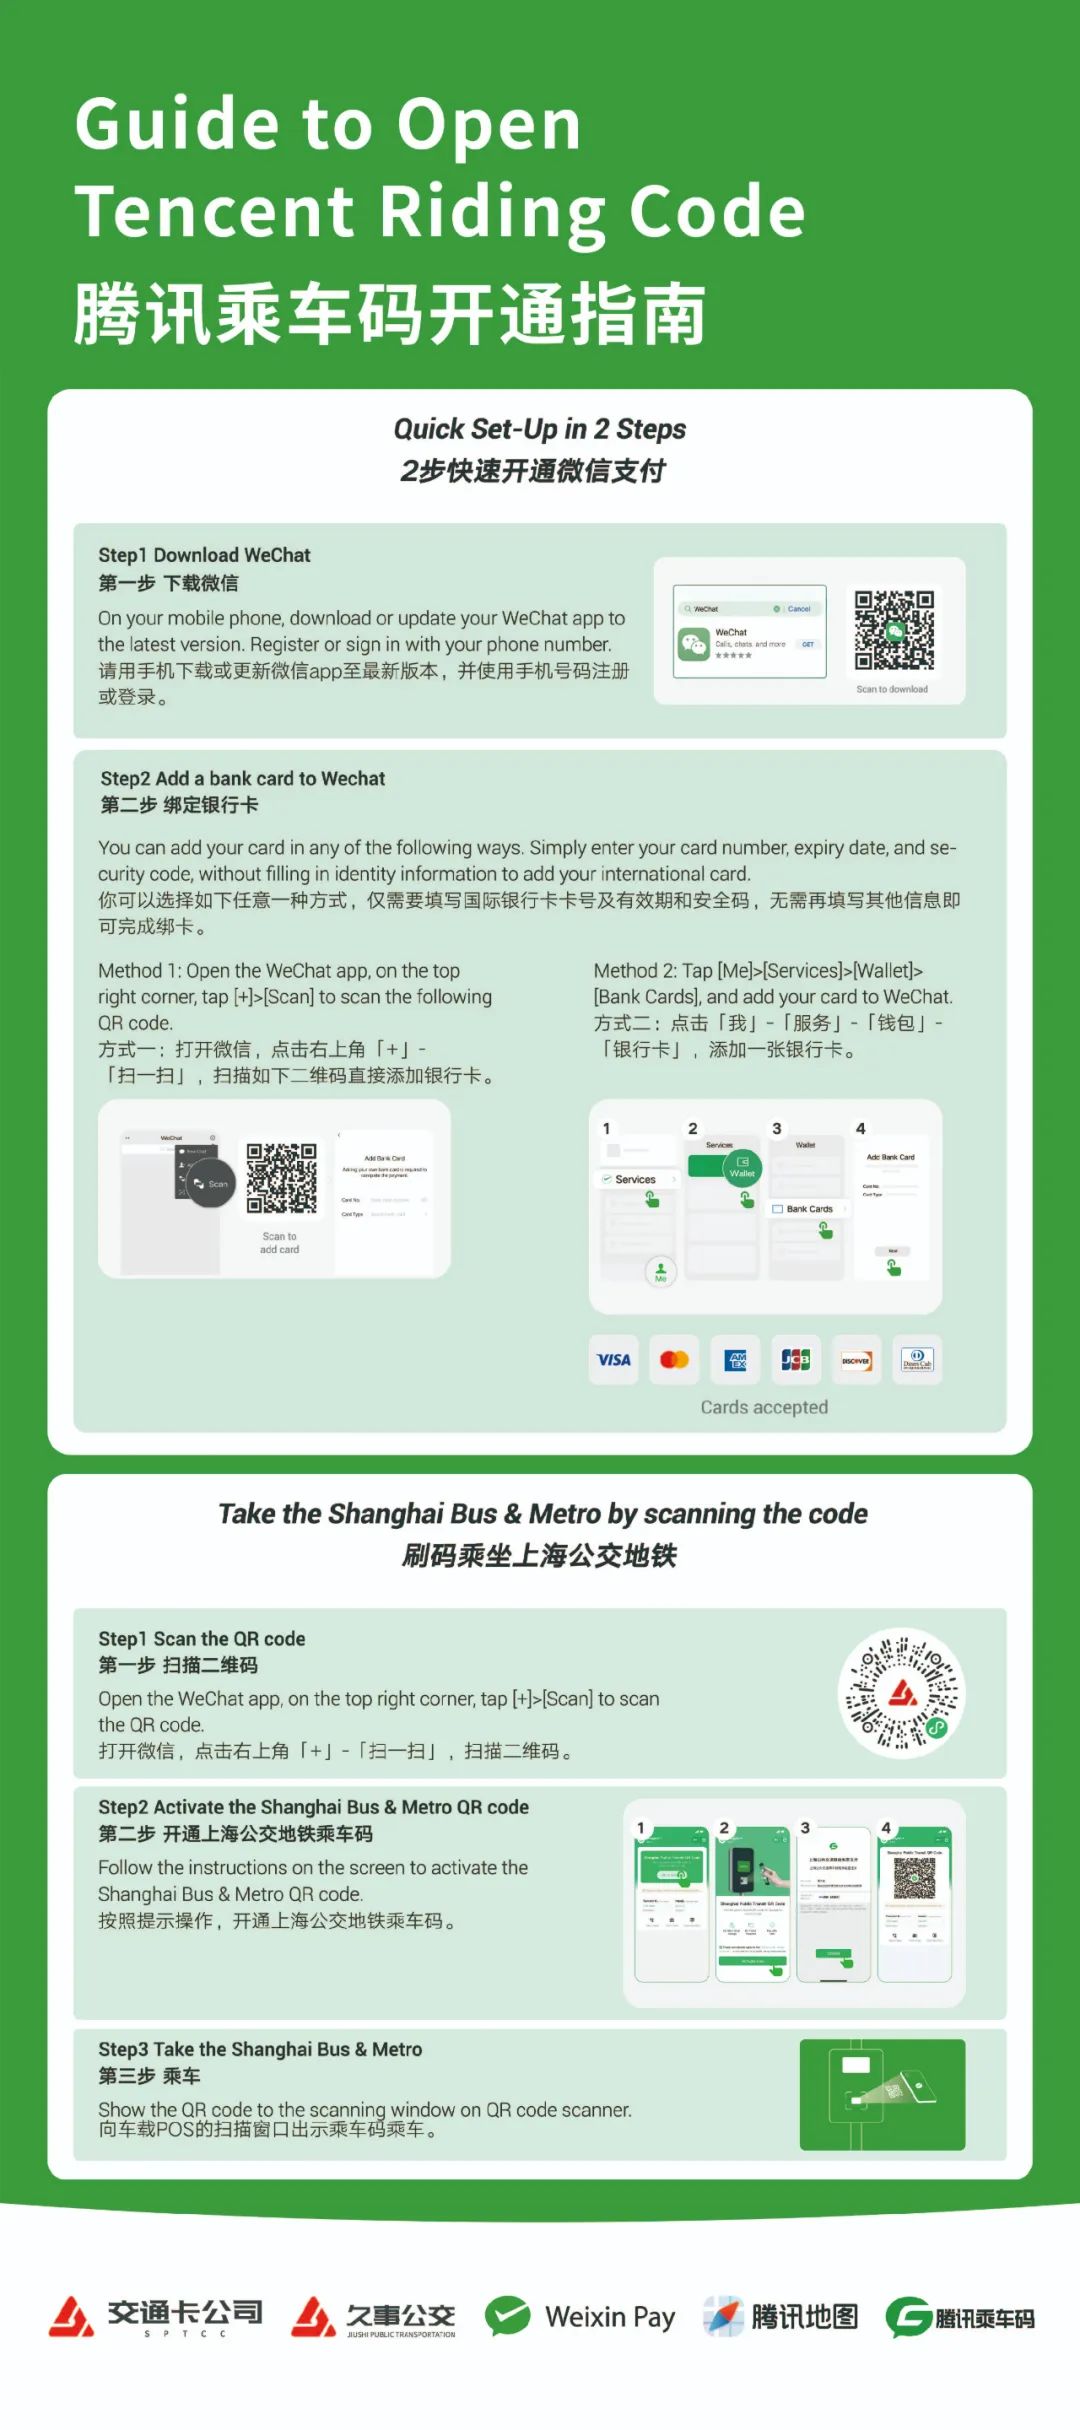 欢迎全球游客，用“Tencent Riding Code”坐中国公交地铁！